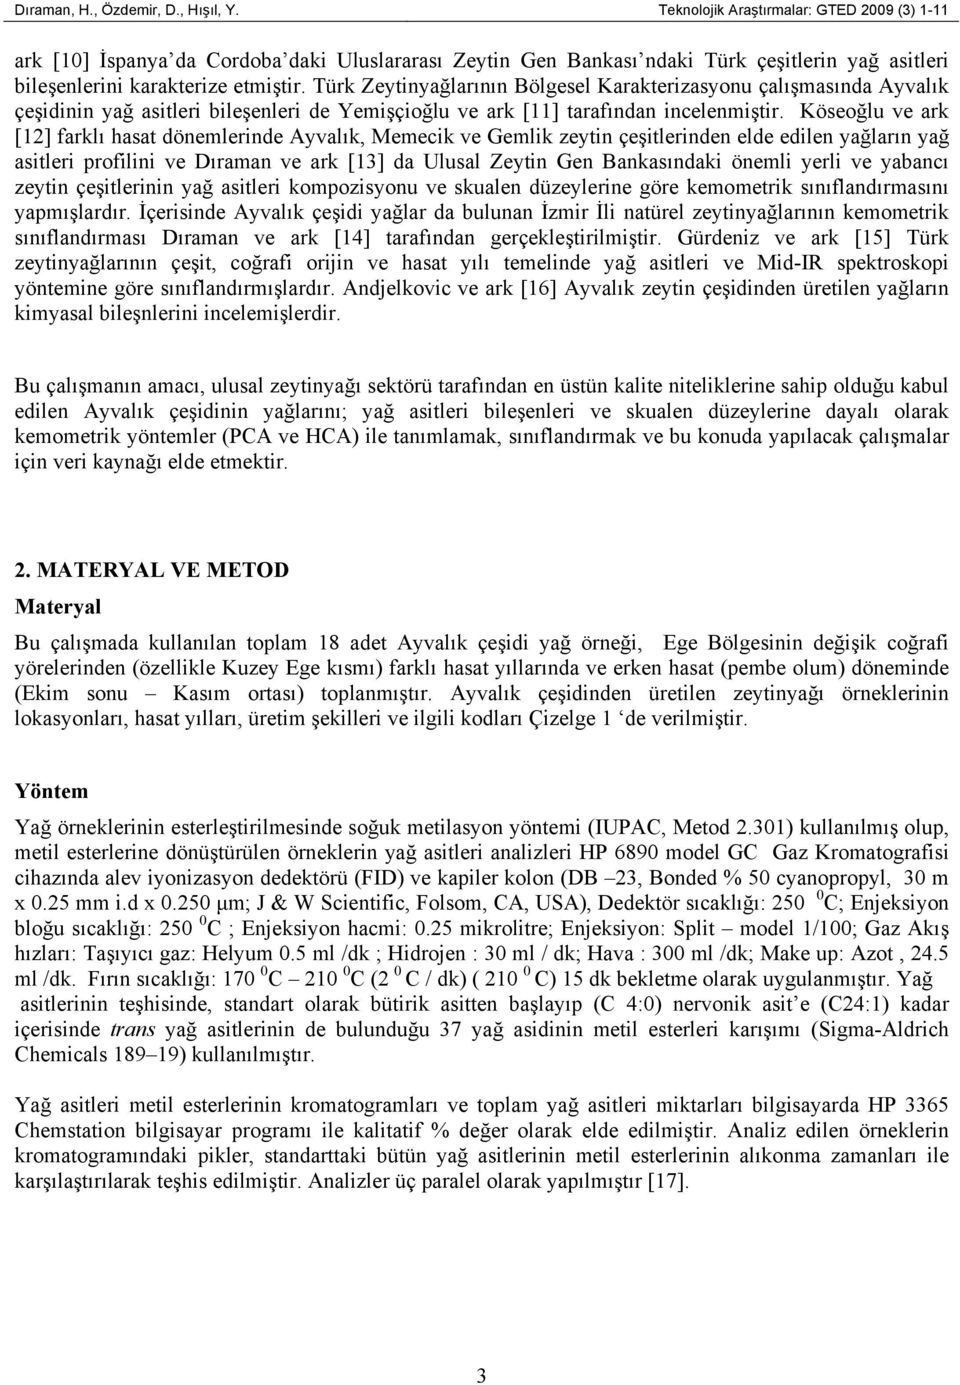 Türk Zeytinyağlarının Bölgesel Karakterizasyonu çalışmasında Ayvalık çeşidinin yağ asitleri bileşenleri de Yemişçioğlu ve ark [11] tarafından incelenmiştir.